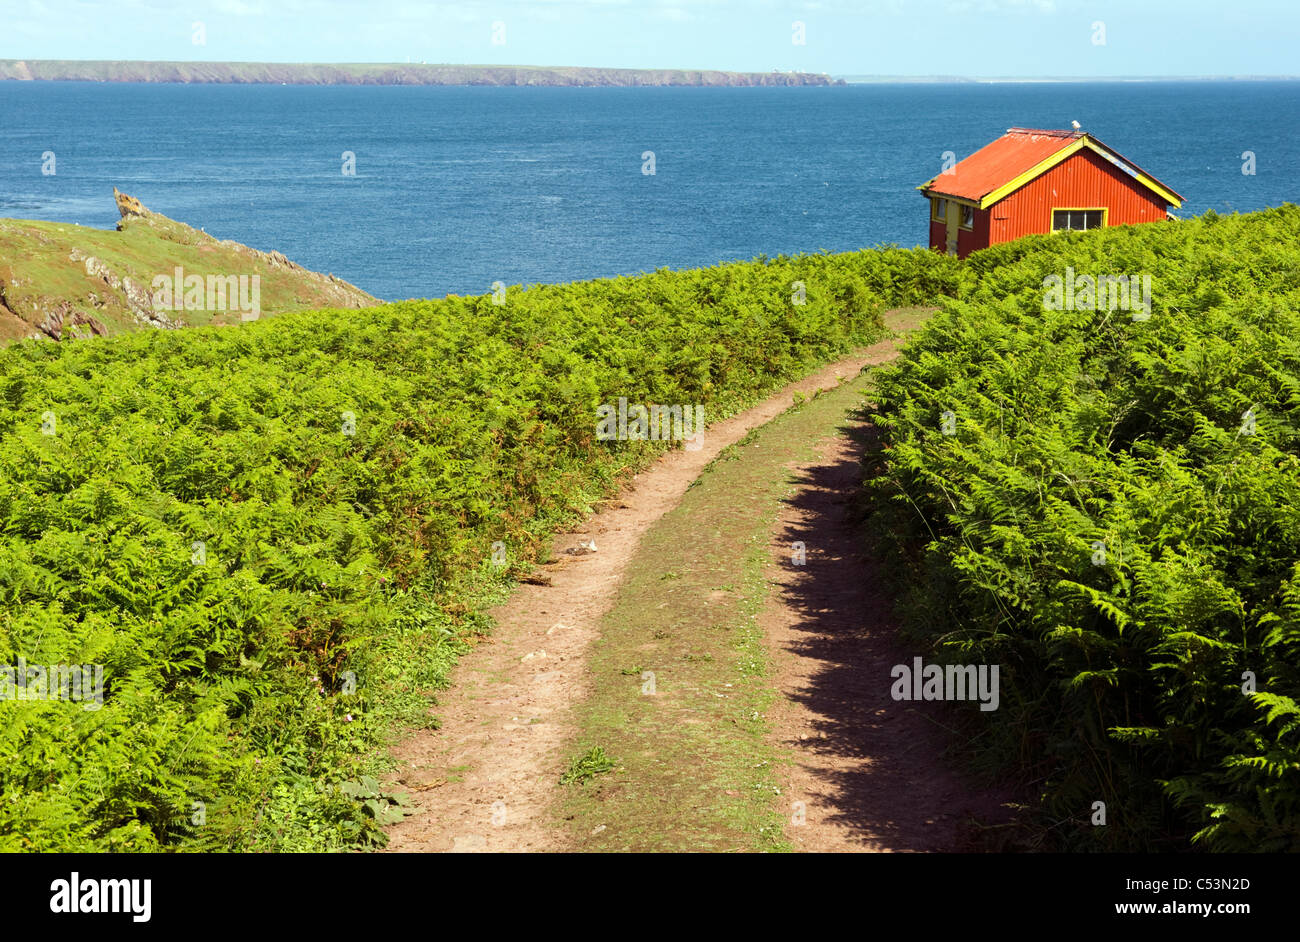 La voie parmi les fougères vers une cabane rouge lointain sur South Haven, Skokholm Skomer island île ; au loin. Banque D'Images